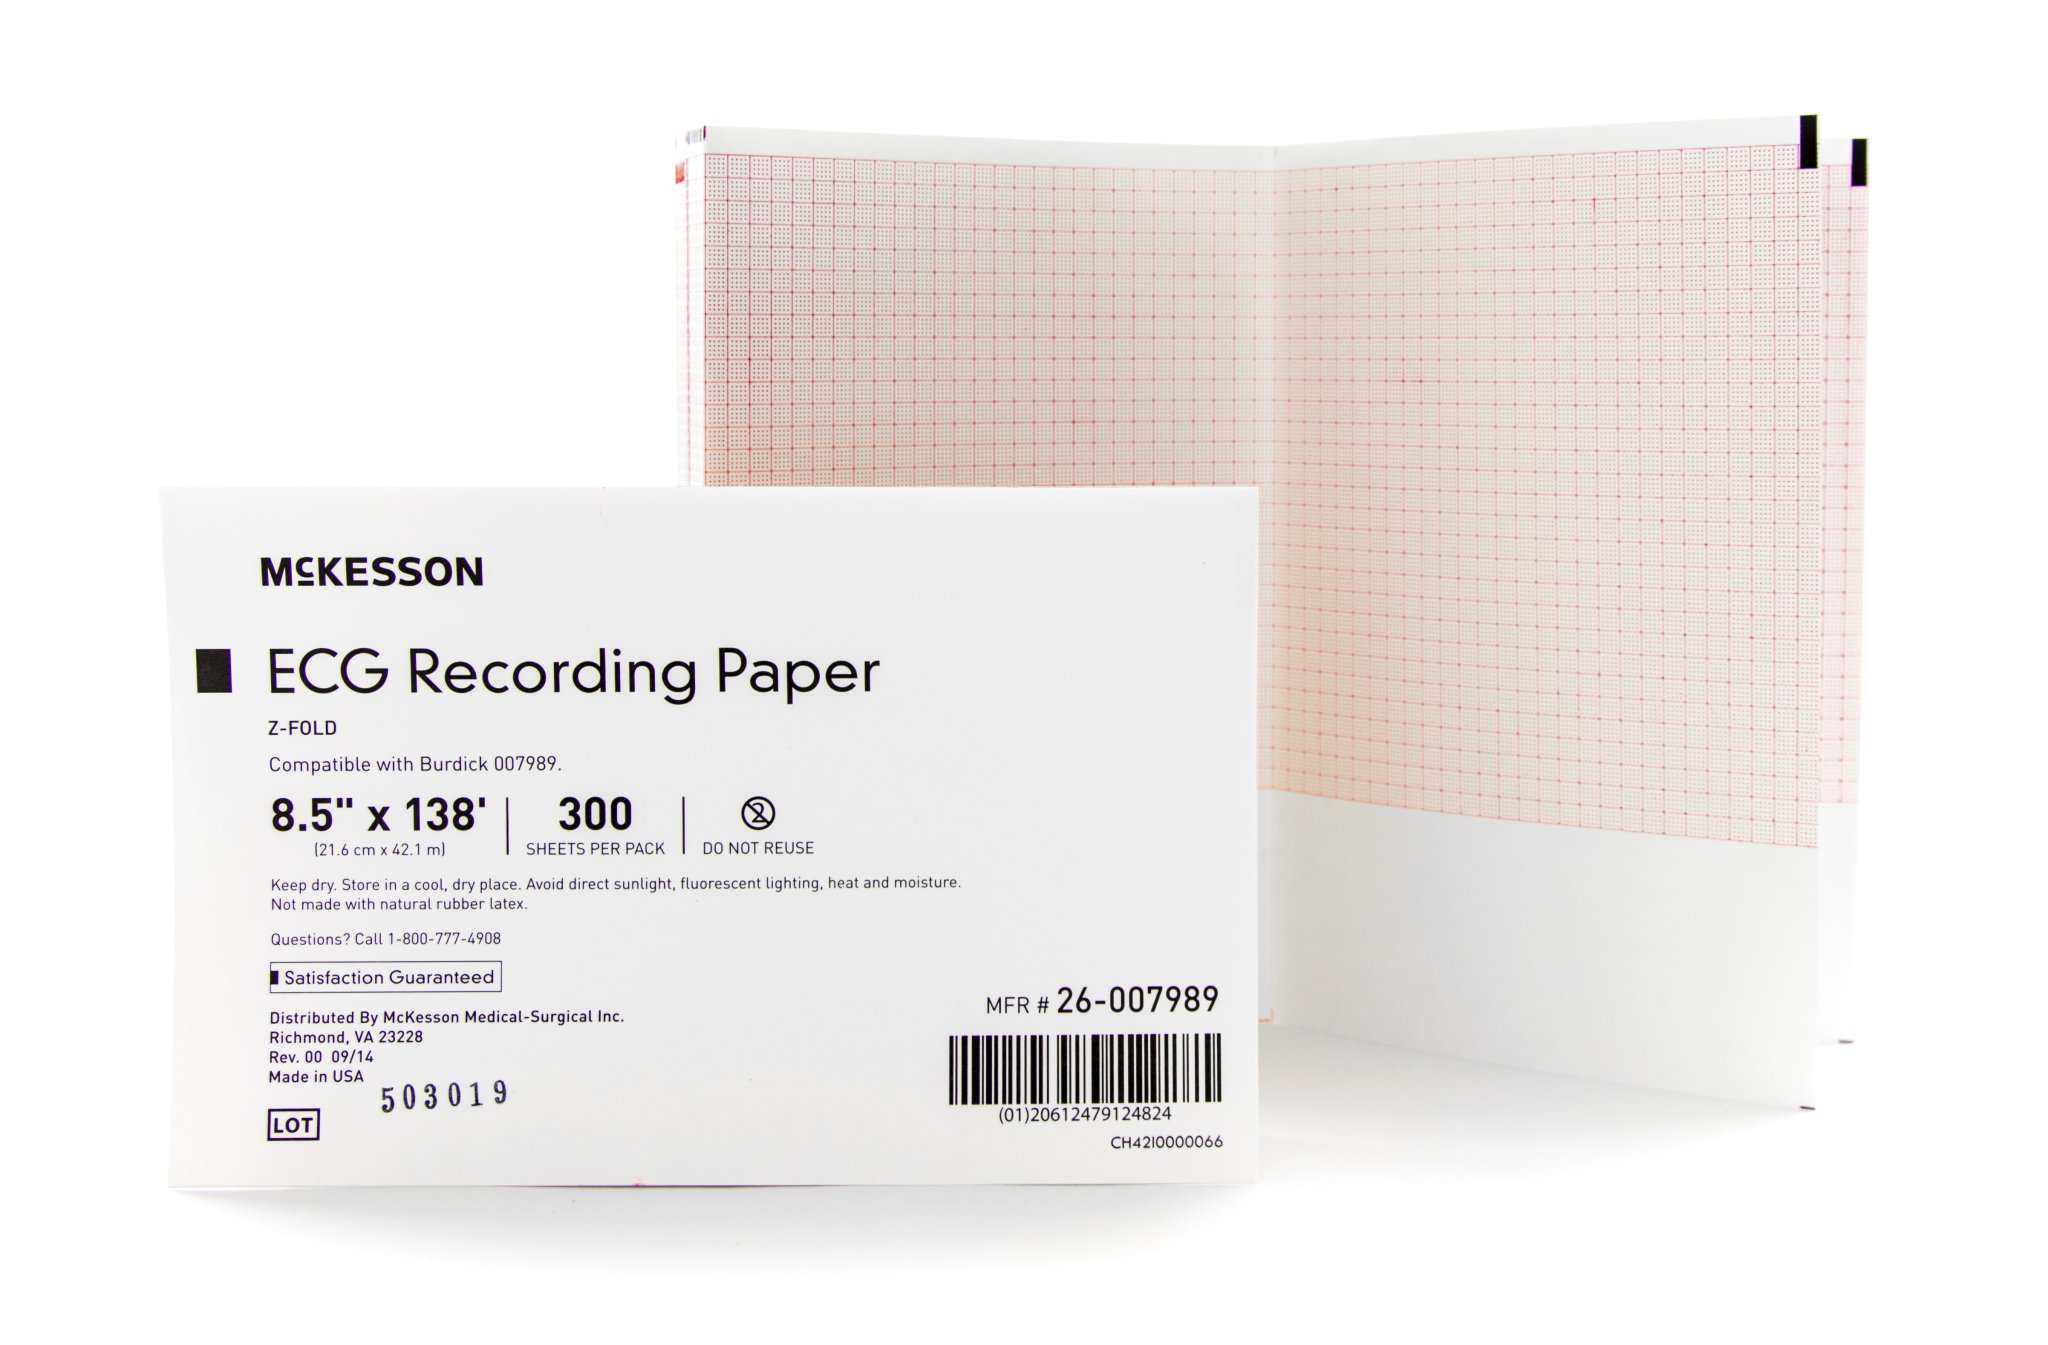 McKesson ECG Recording Paper